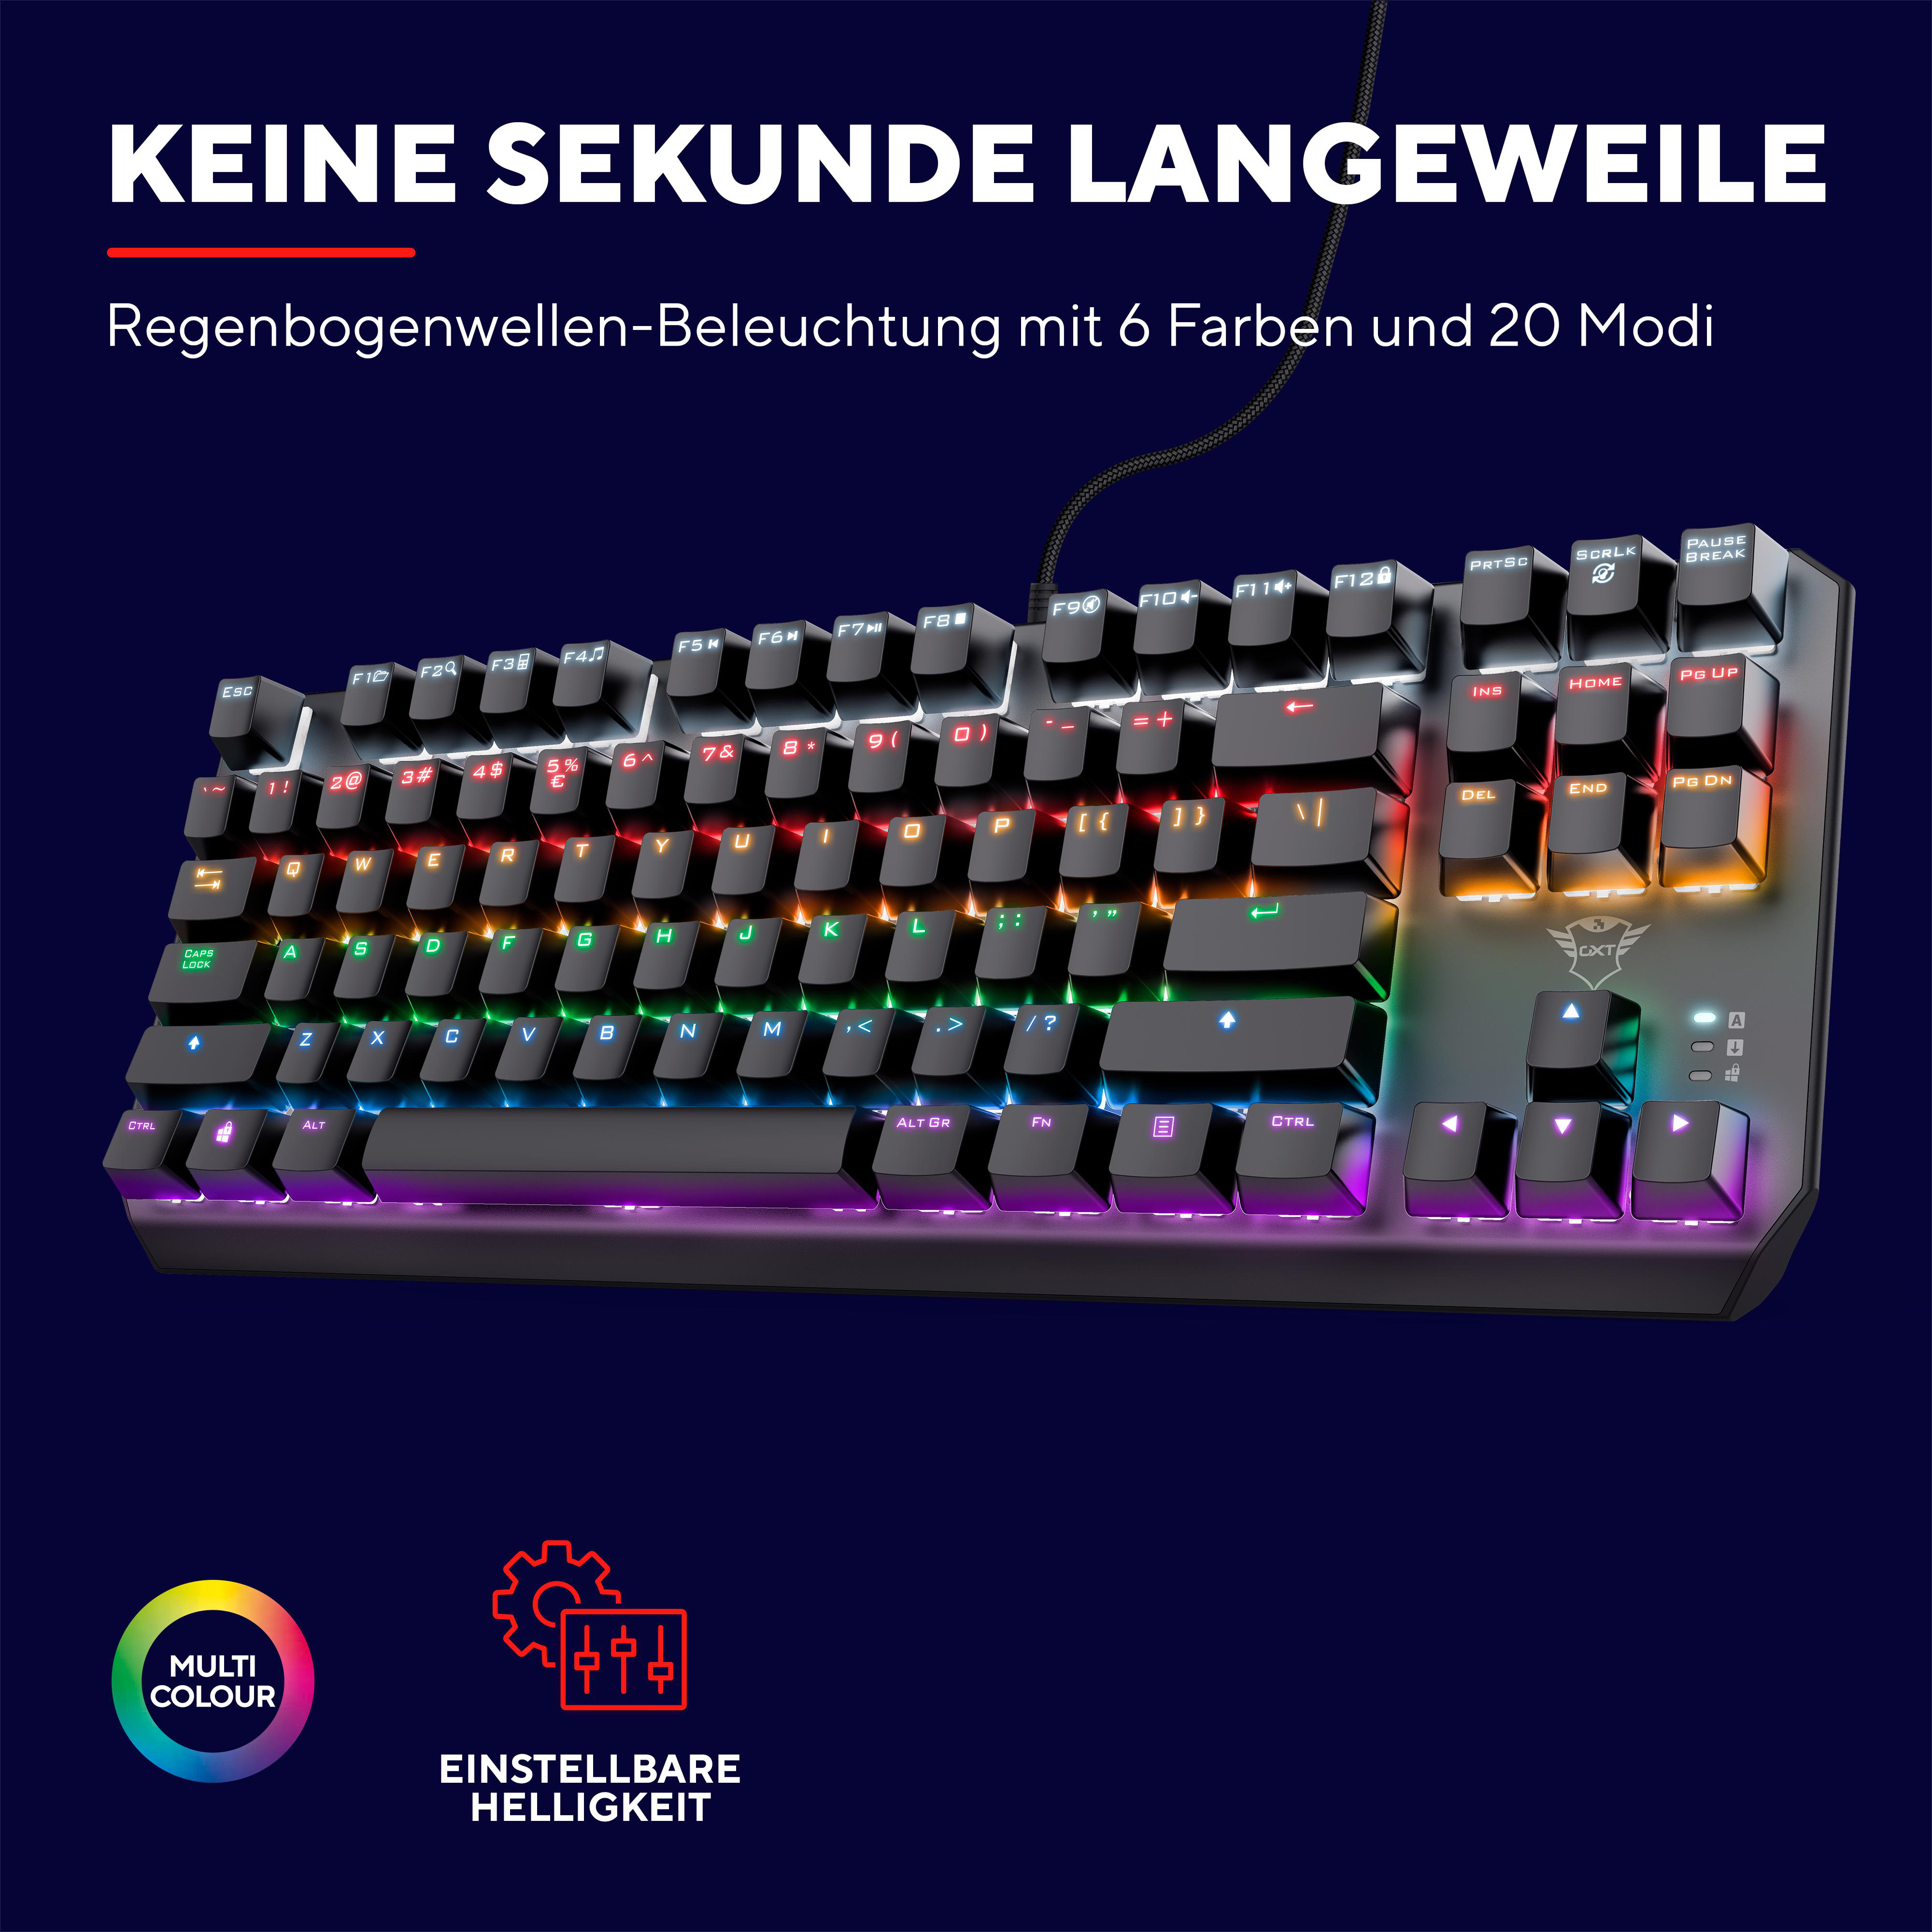 QWERTZ-Layout, Schwarz Mechanische Tastatur, GXT TRUST TKL 834 Gaming Callaz